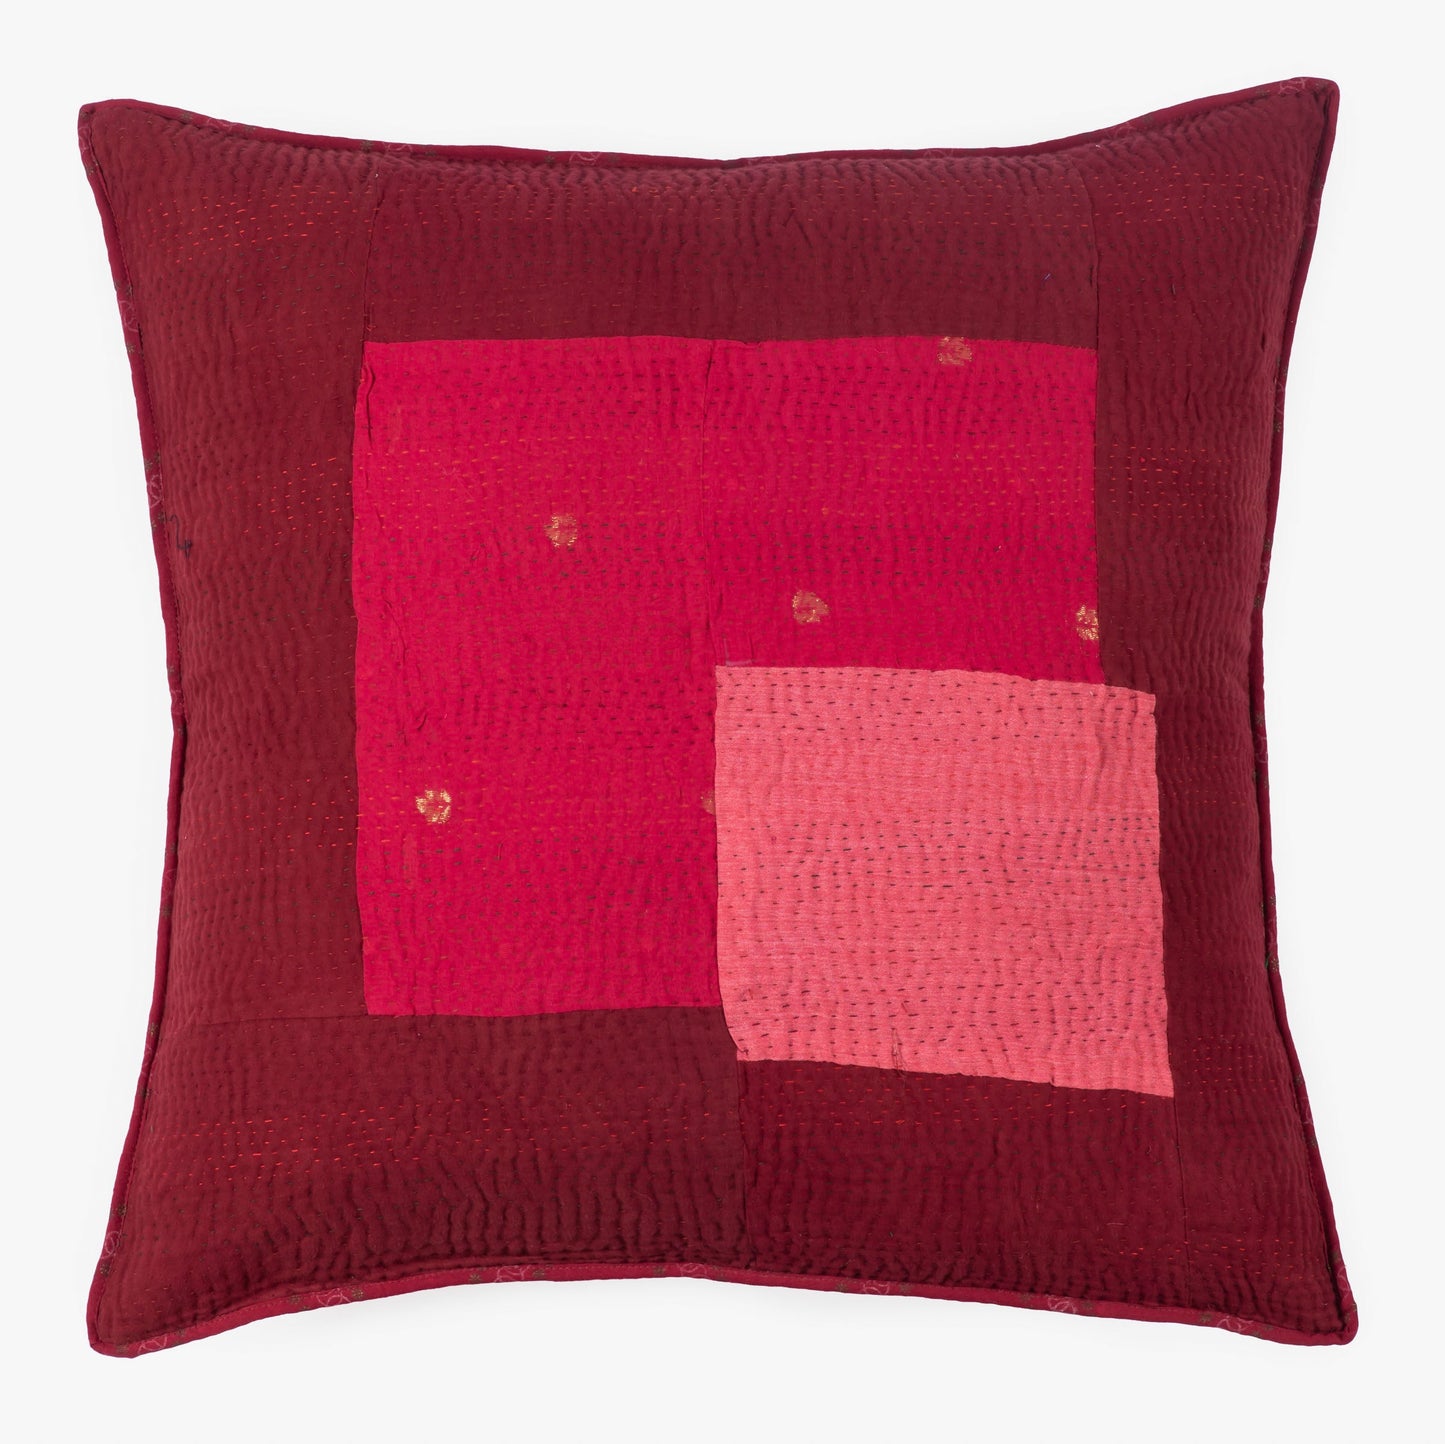 Landscape Handmade vintage Kantha Pillow - Red